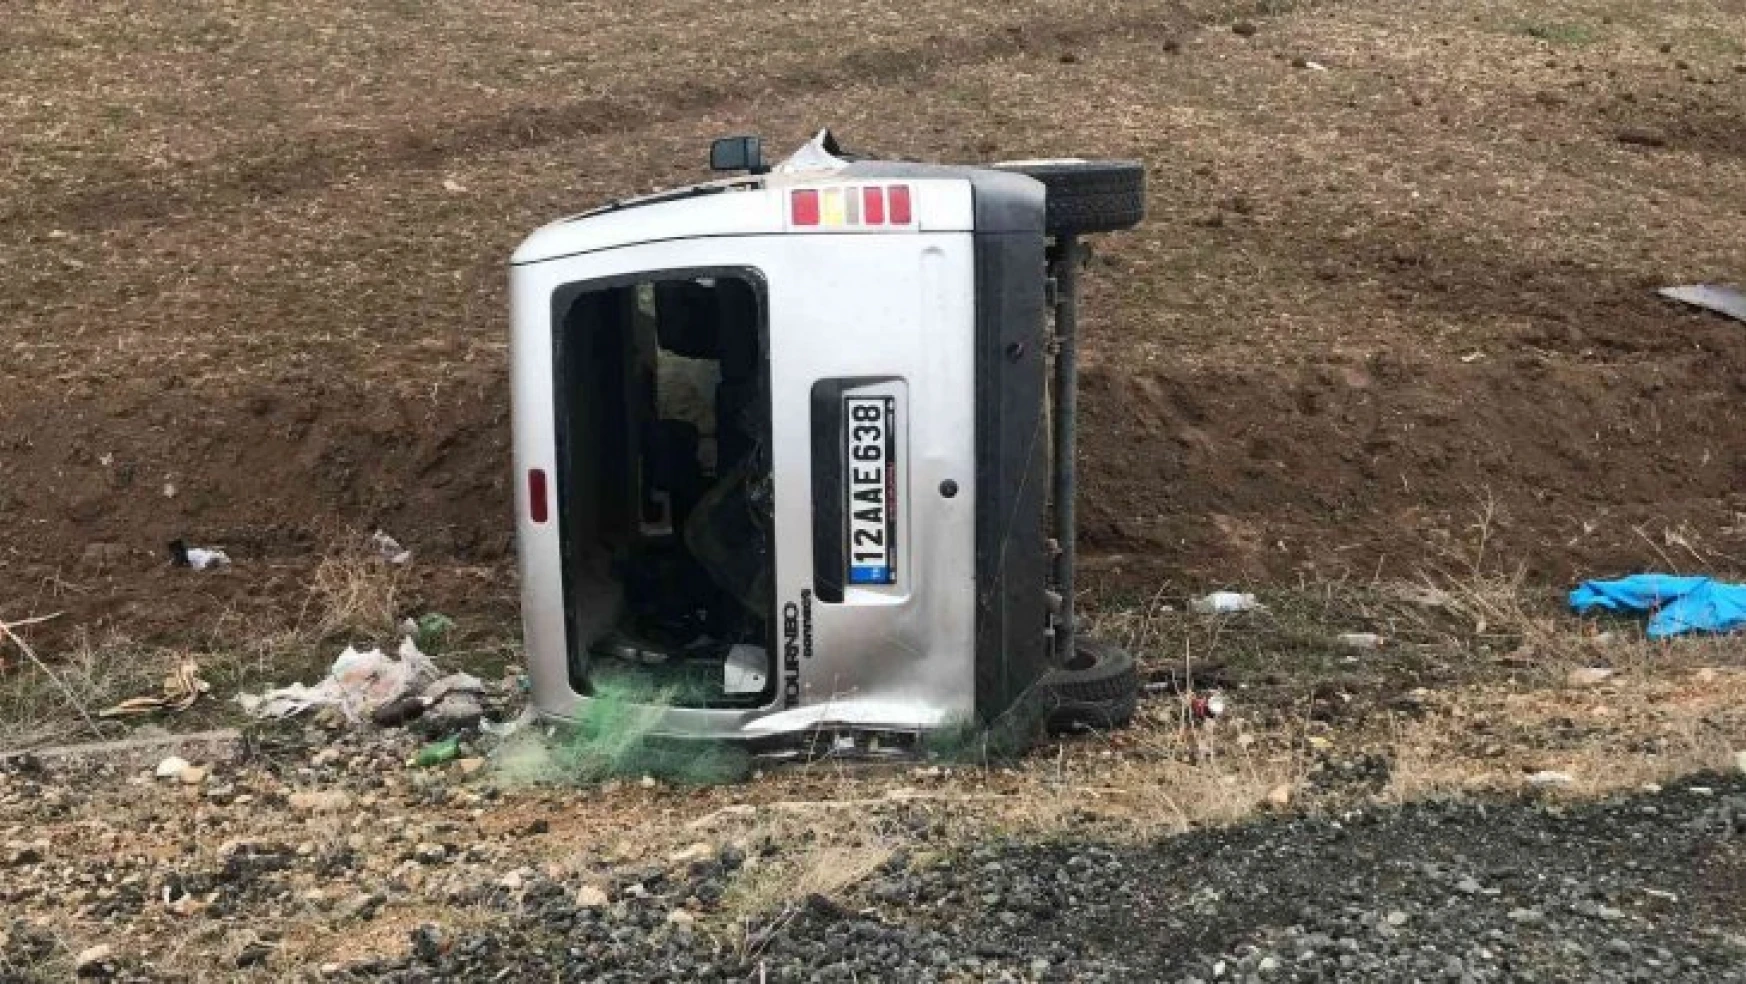 Elazığ'da yılın ilk 2 ayındaki 352 trafik kazasında 4 kişi öldü, 173 kişi de yaralandı